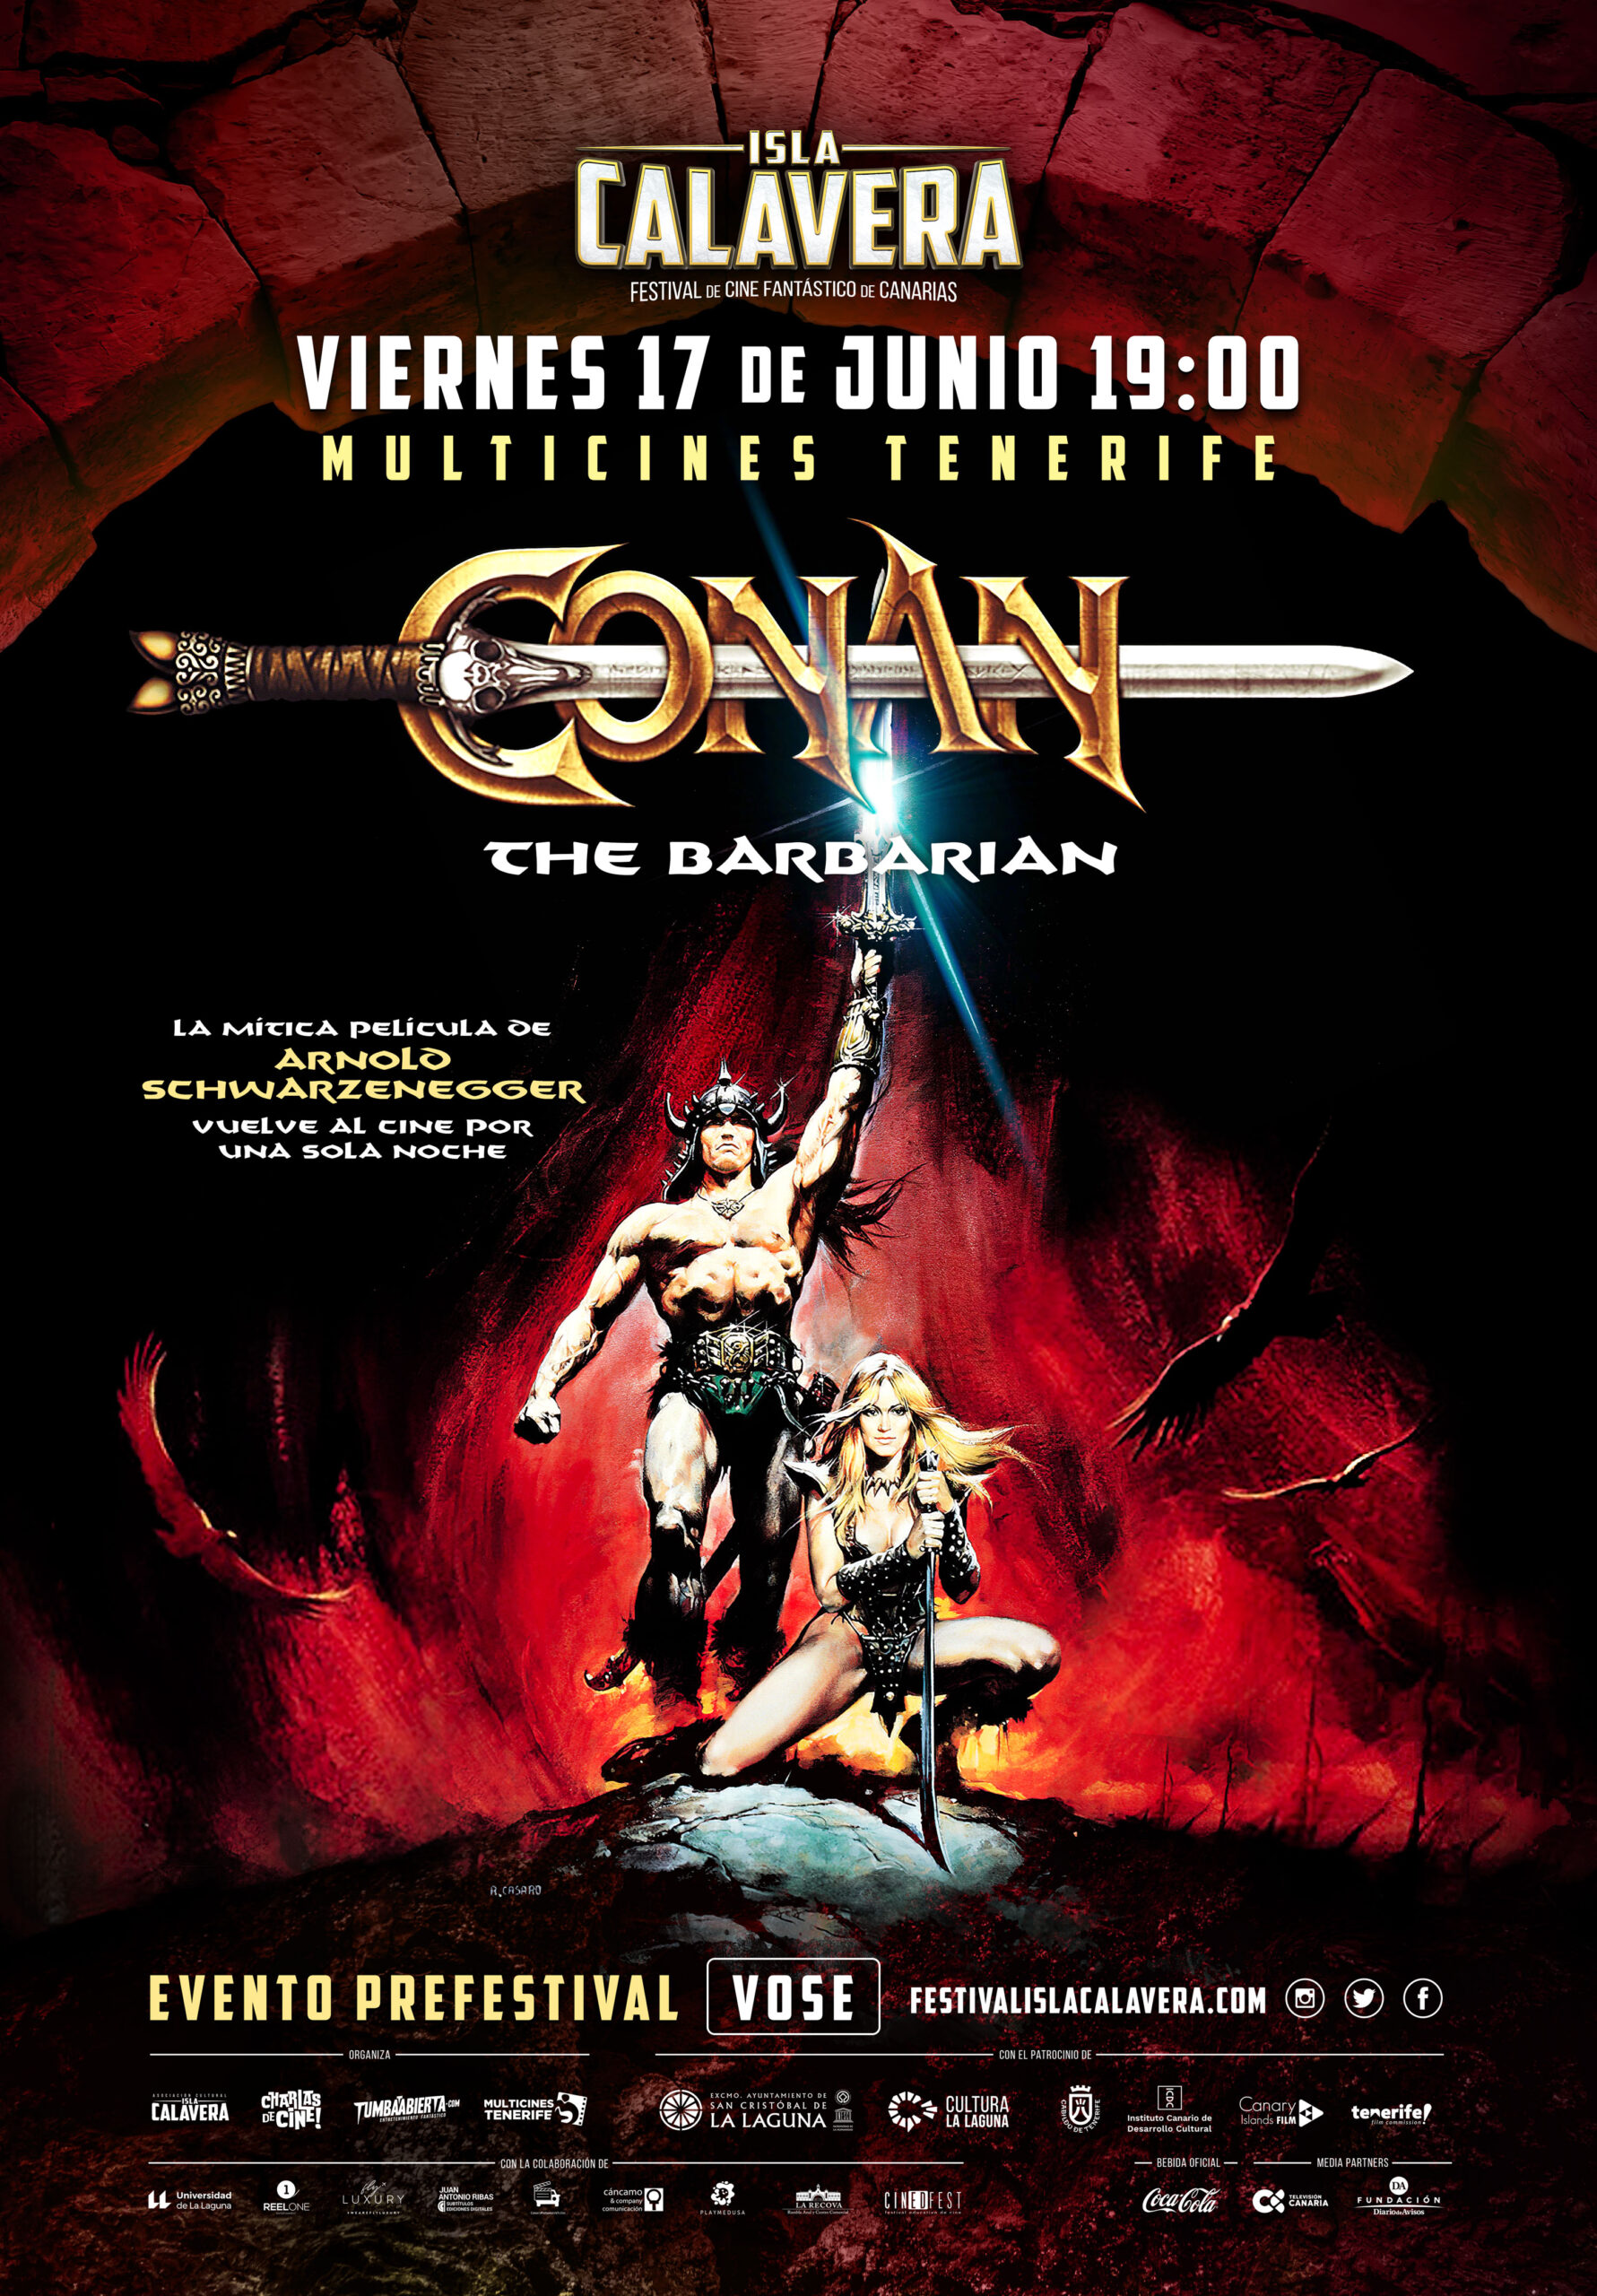 Cartel del evento prefestival Isla Calavera por el 40º aniversario de 'Conan, el bárbaro'.